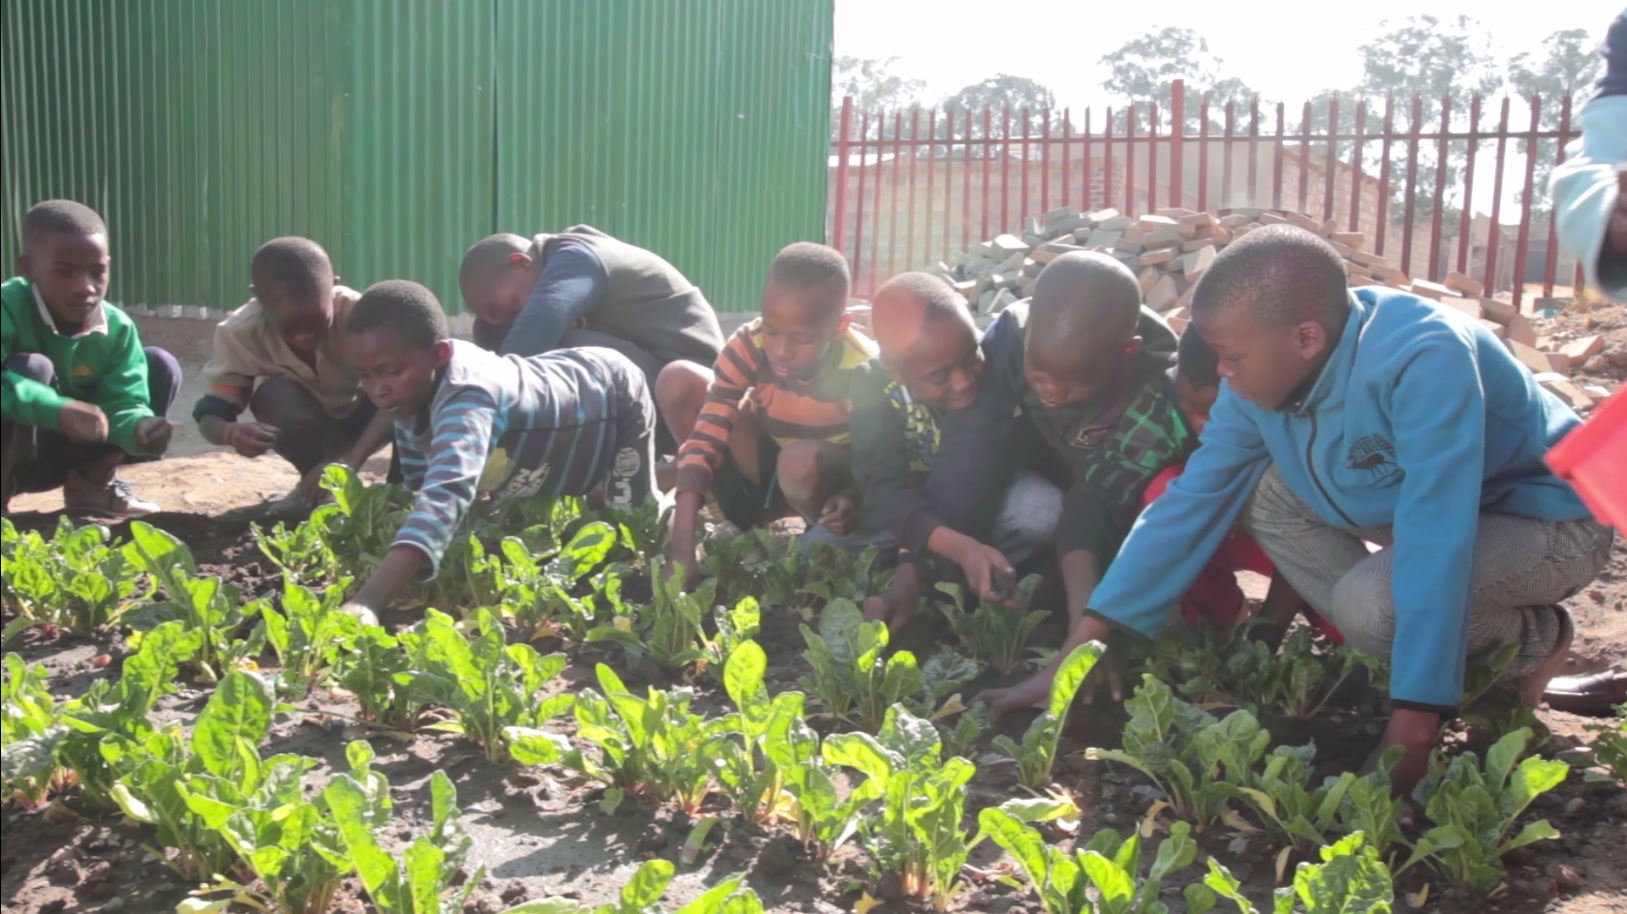 Children in a vegetable garden